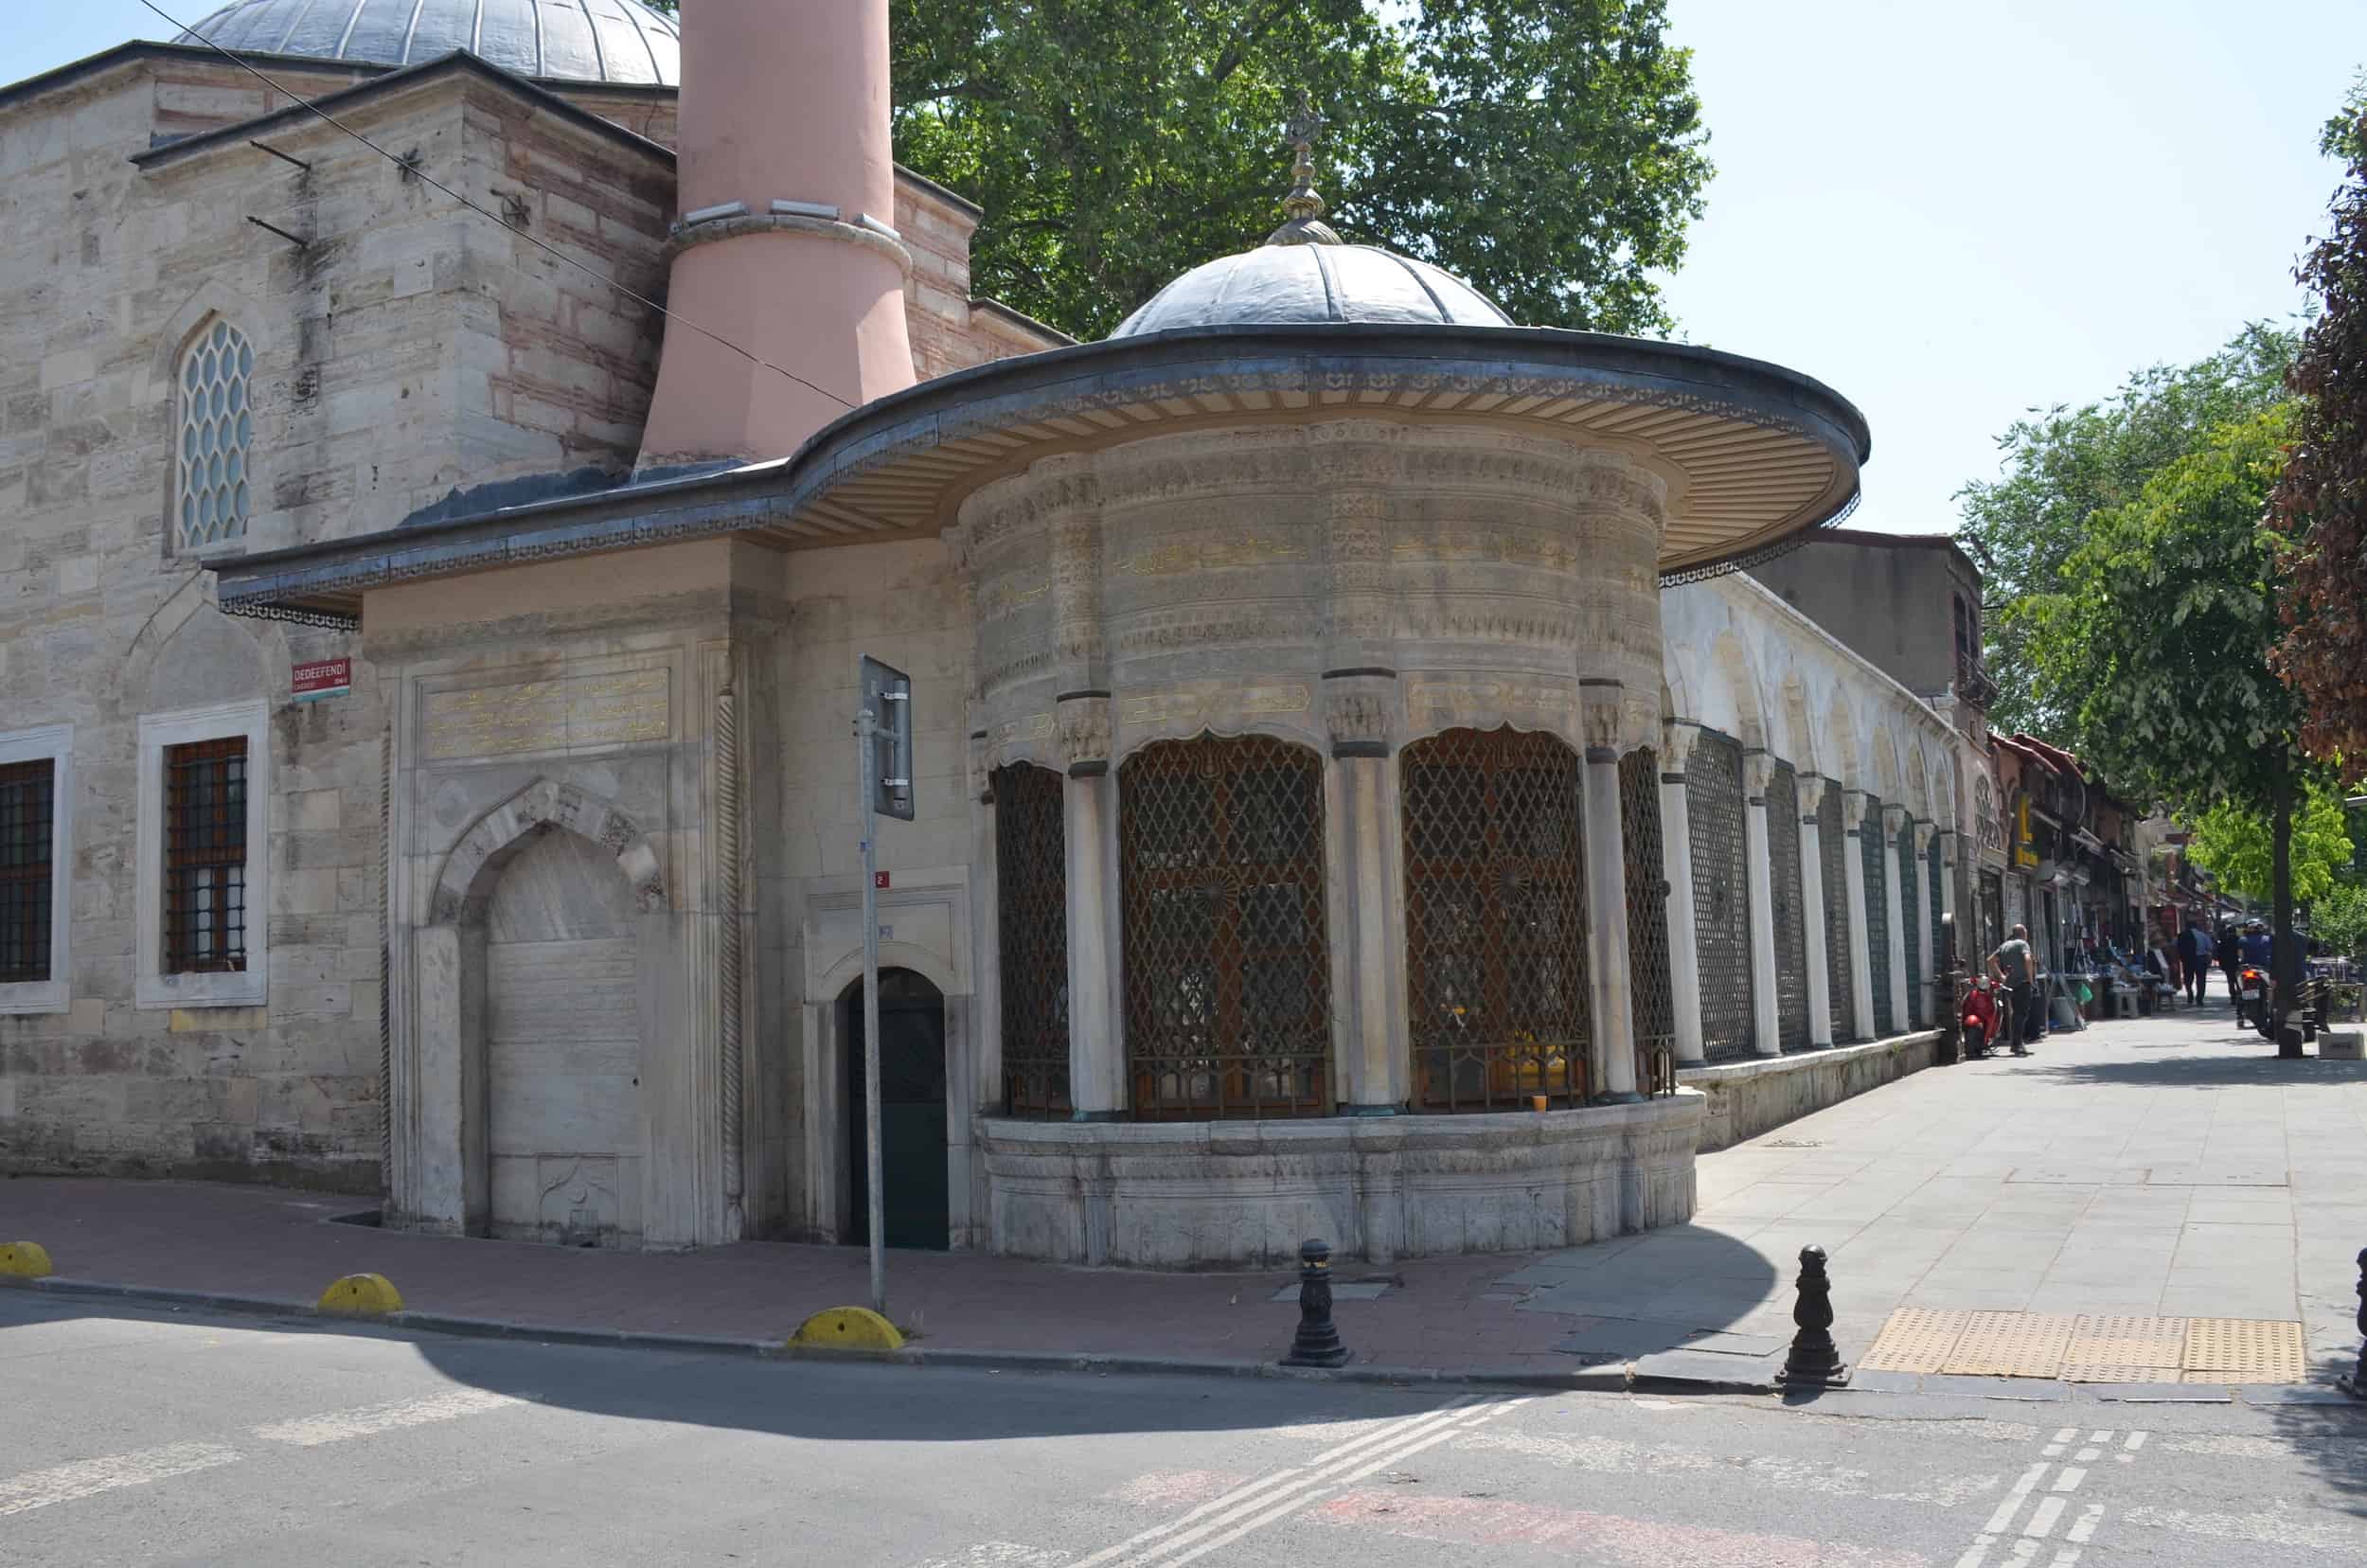 Damat Ibrahim Pasha Fountain in Şehzadebaşı, Istanbul, Turkey